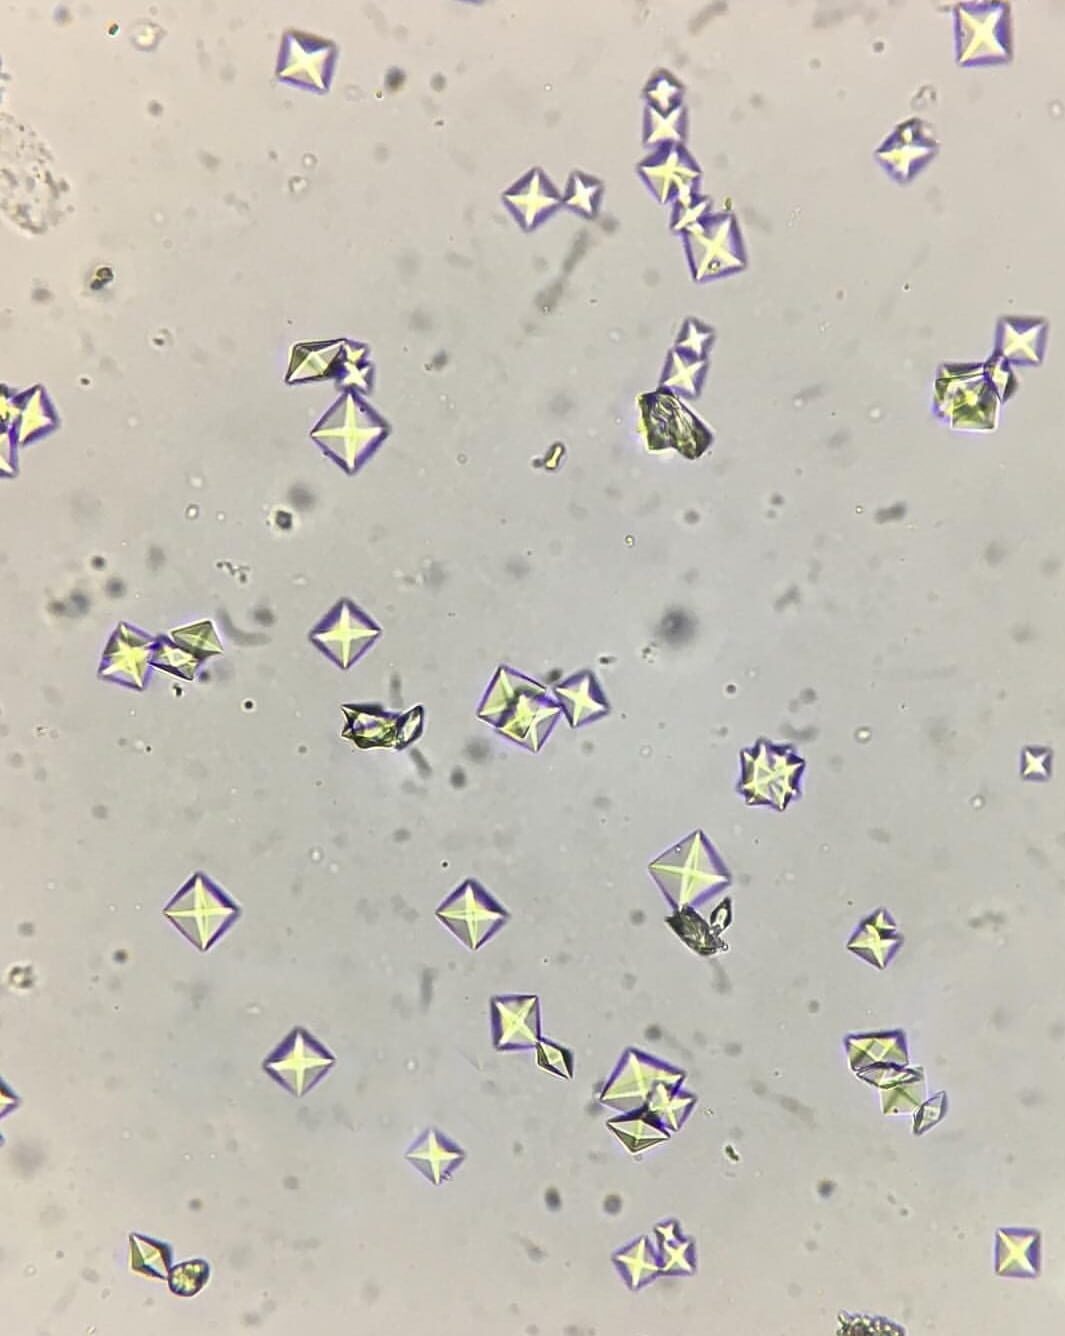 При микроскопии осадка мочи обнаружены оксалаты кальция